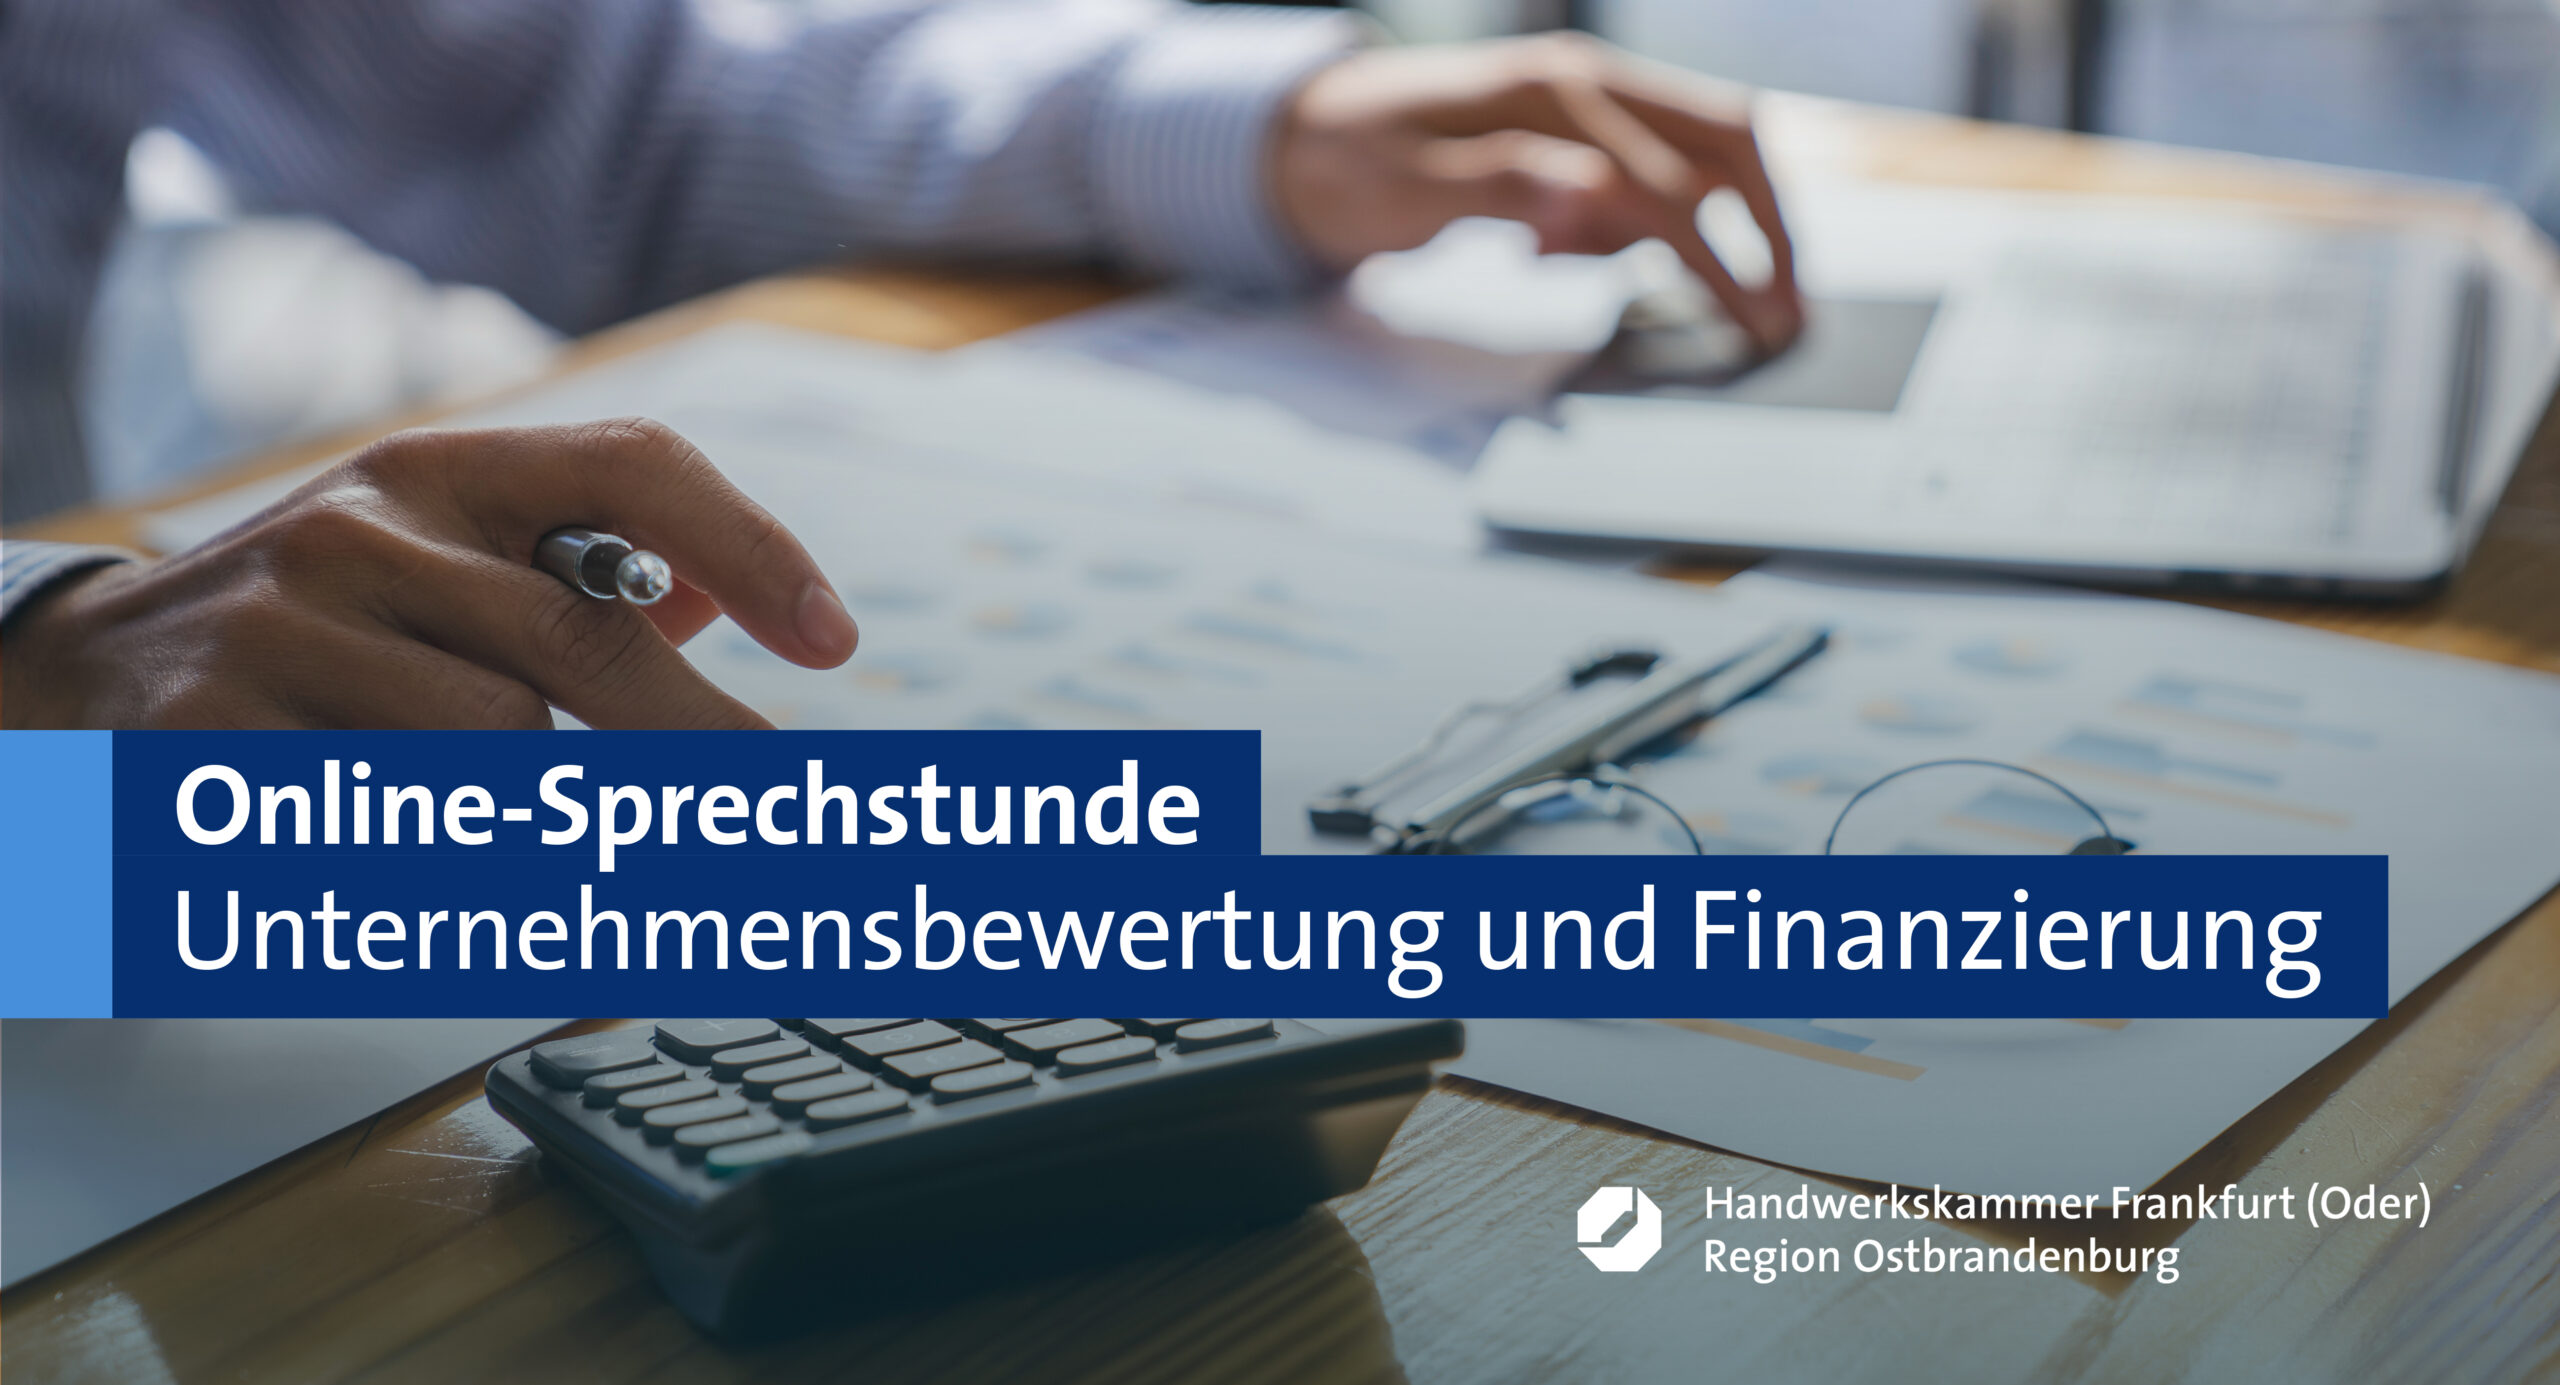 Online-Sprechstunde "Unternehmensbewertung und Finanzierung im Rahmen der Betriebsnachfolge"